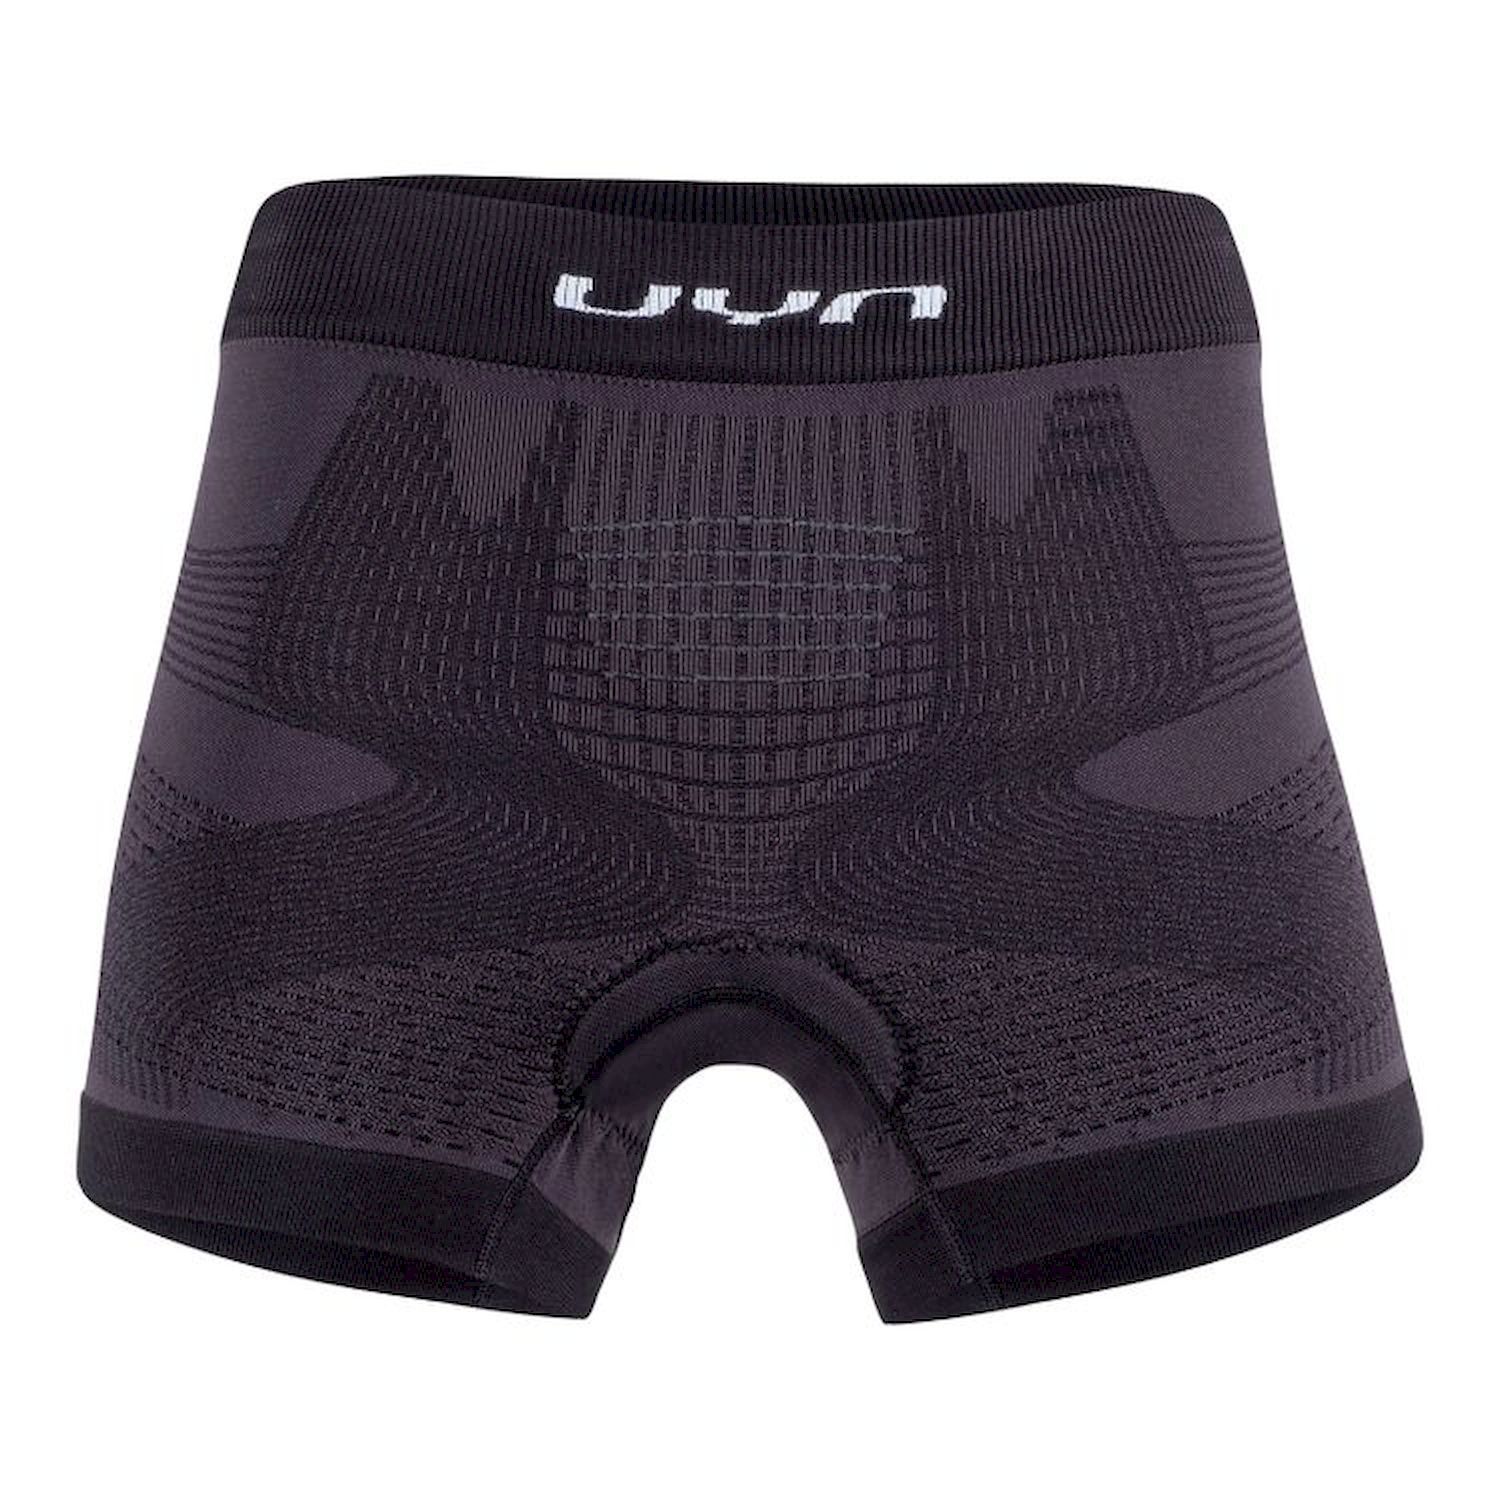 Uyn Motyon Uw Boxer With Pad - Underwear - Women's